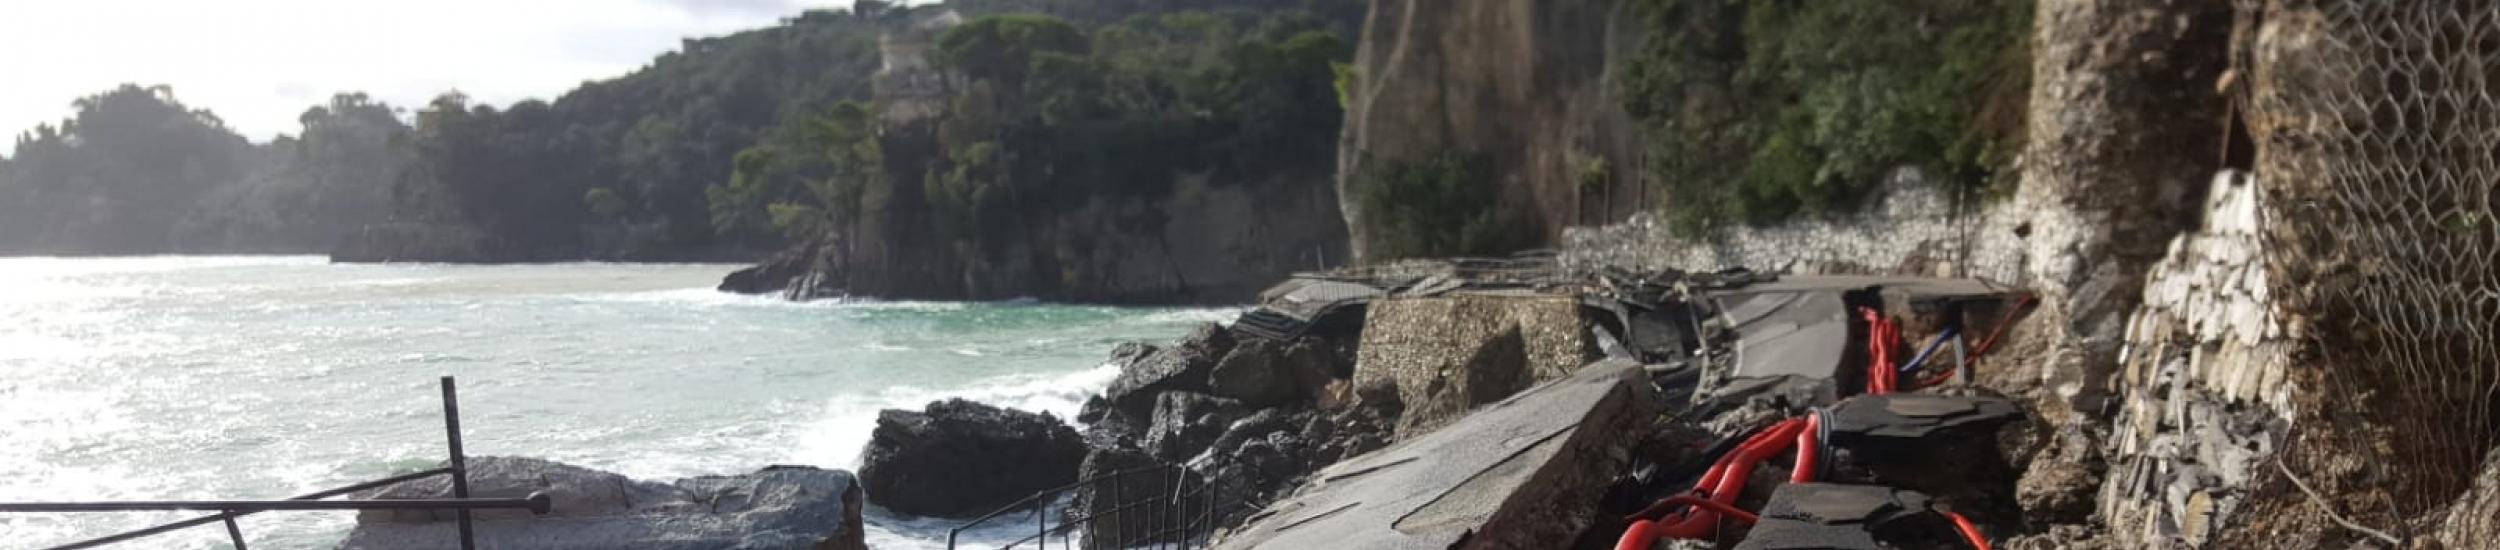 News: SP n. 227 di Portofino. Totale interdizione della circolazione veicolare e pedonale tra le progr.ve km 4+000 e km 6+000 in Comune di Santa Margherita Ligure.